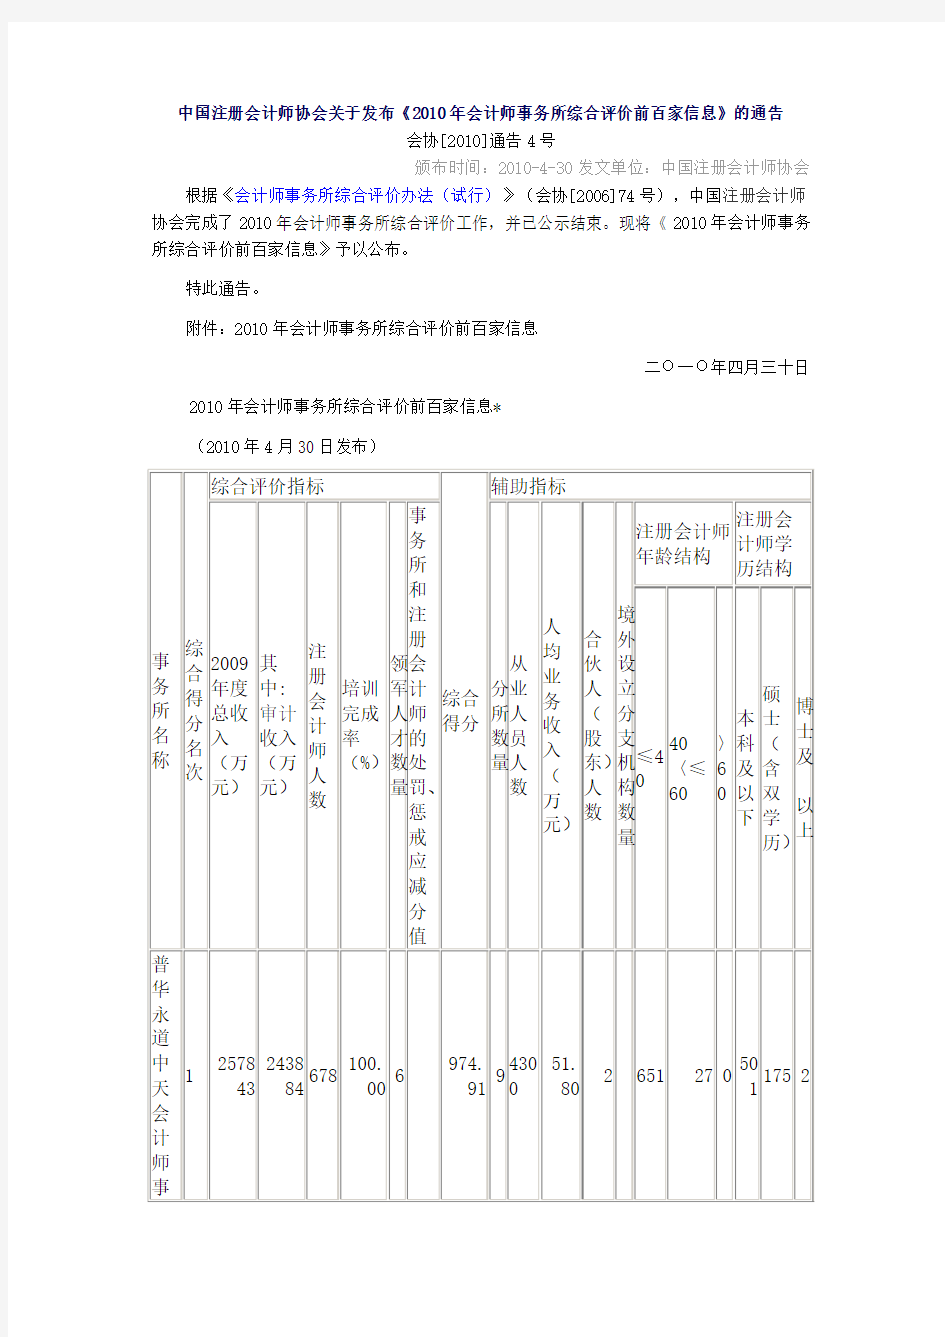 中国注册会计师协会关于发布《2010年会计师事务所综合评价前百家信息》的通告